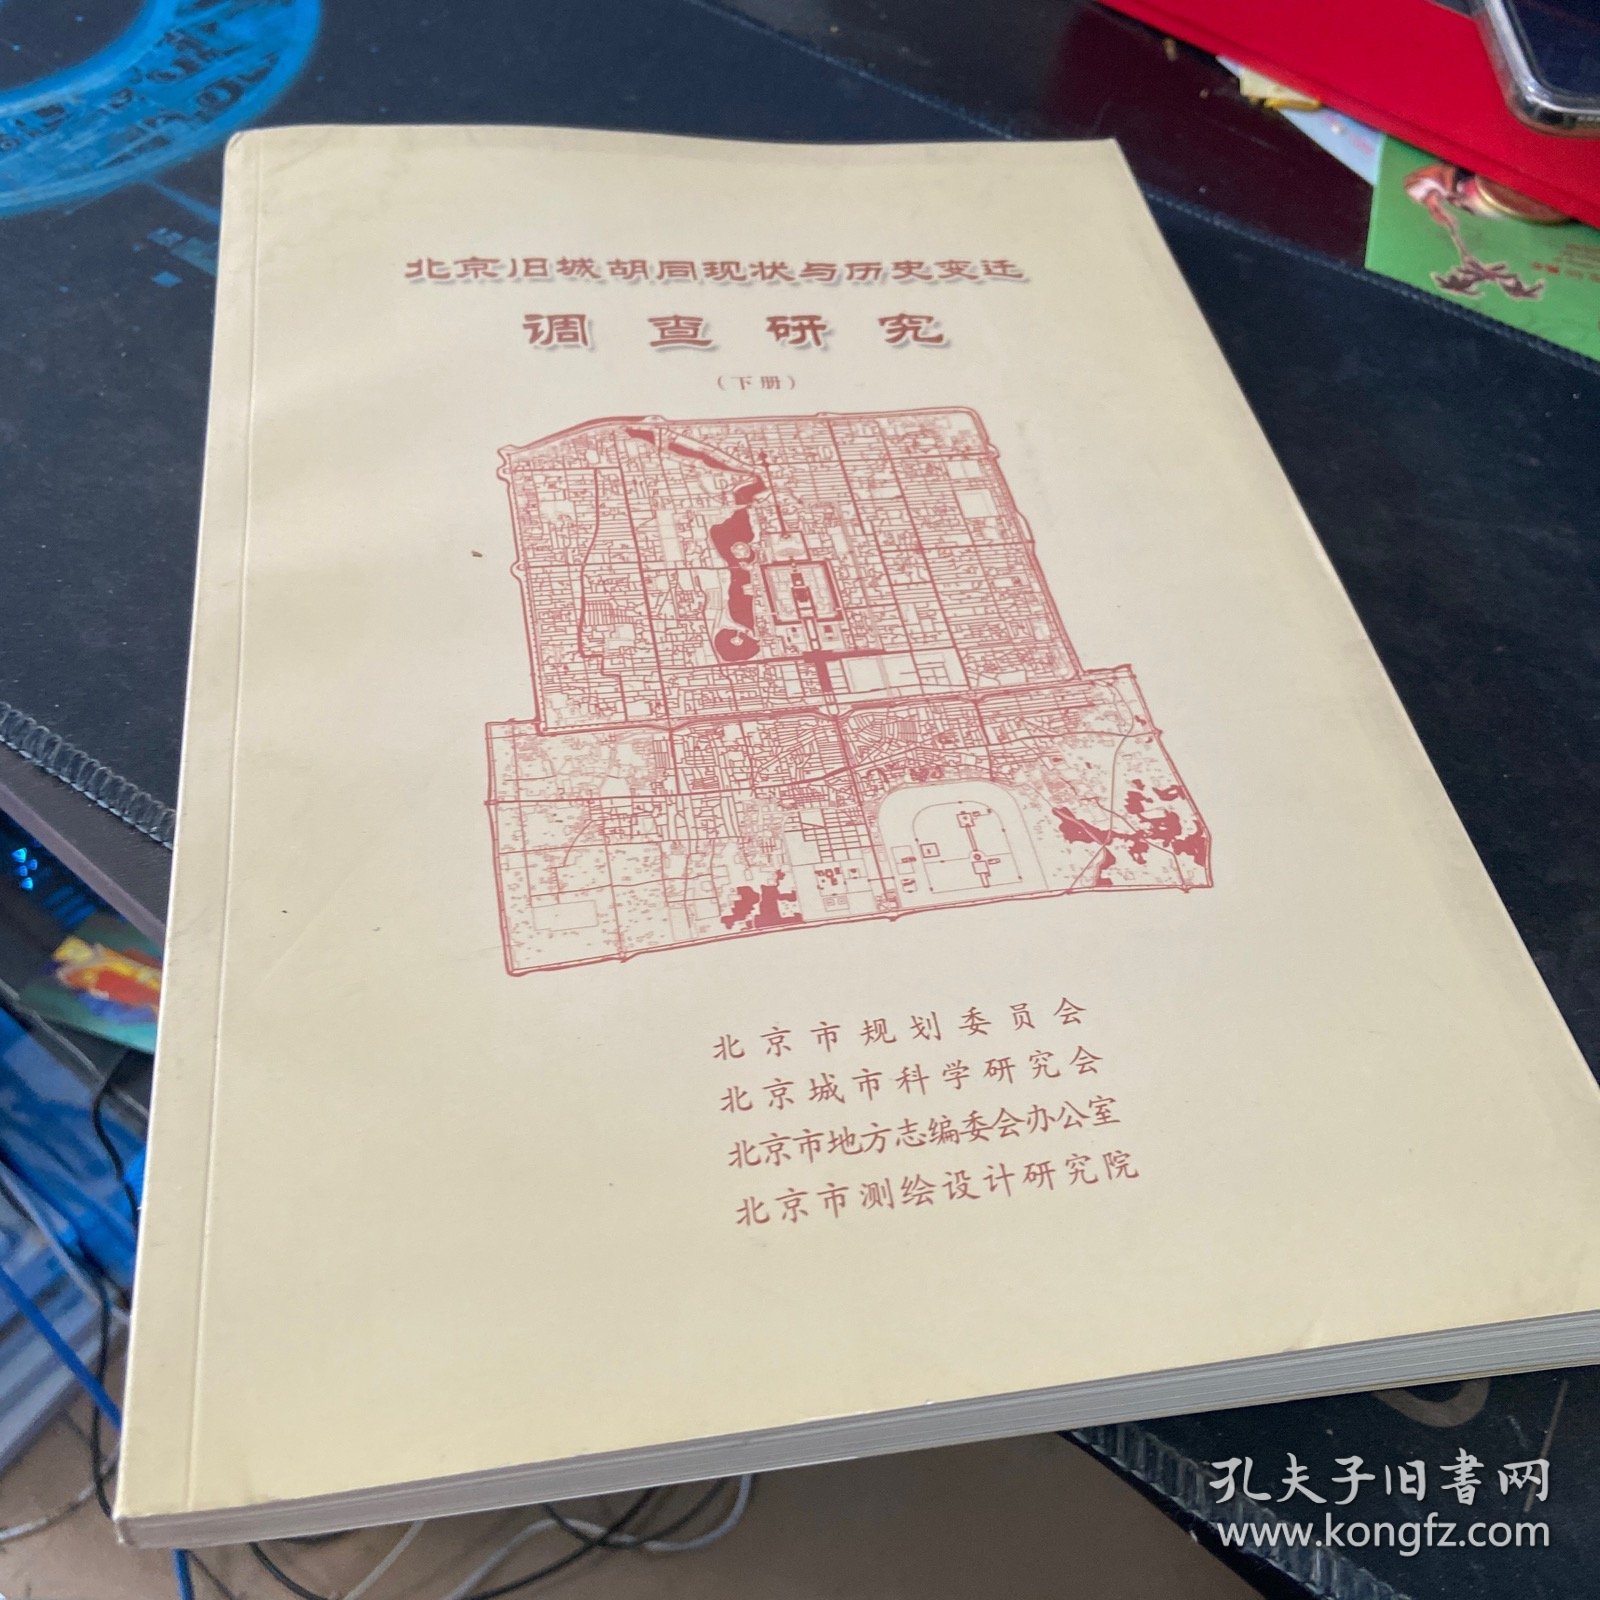 北京旧城胡同现状与历史变迁调查研究 （下）